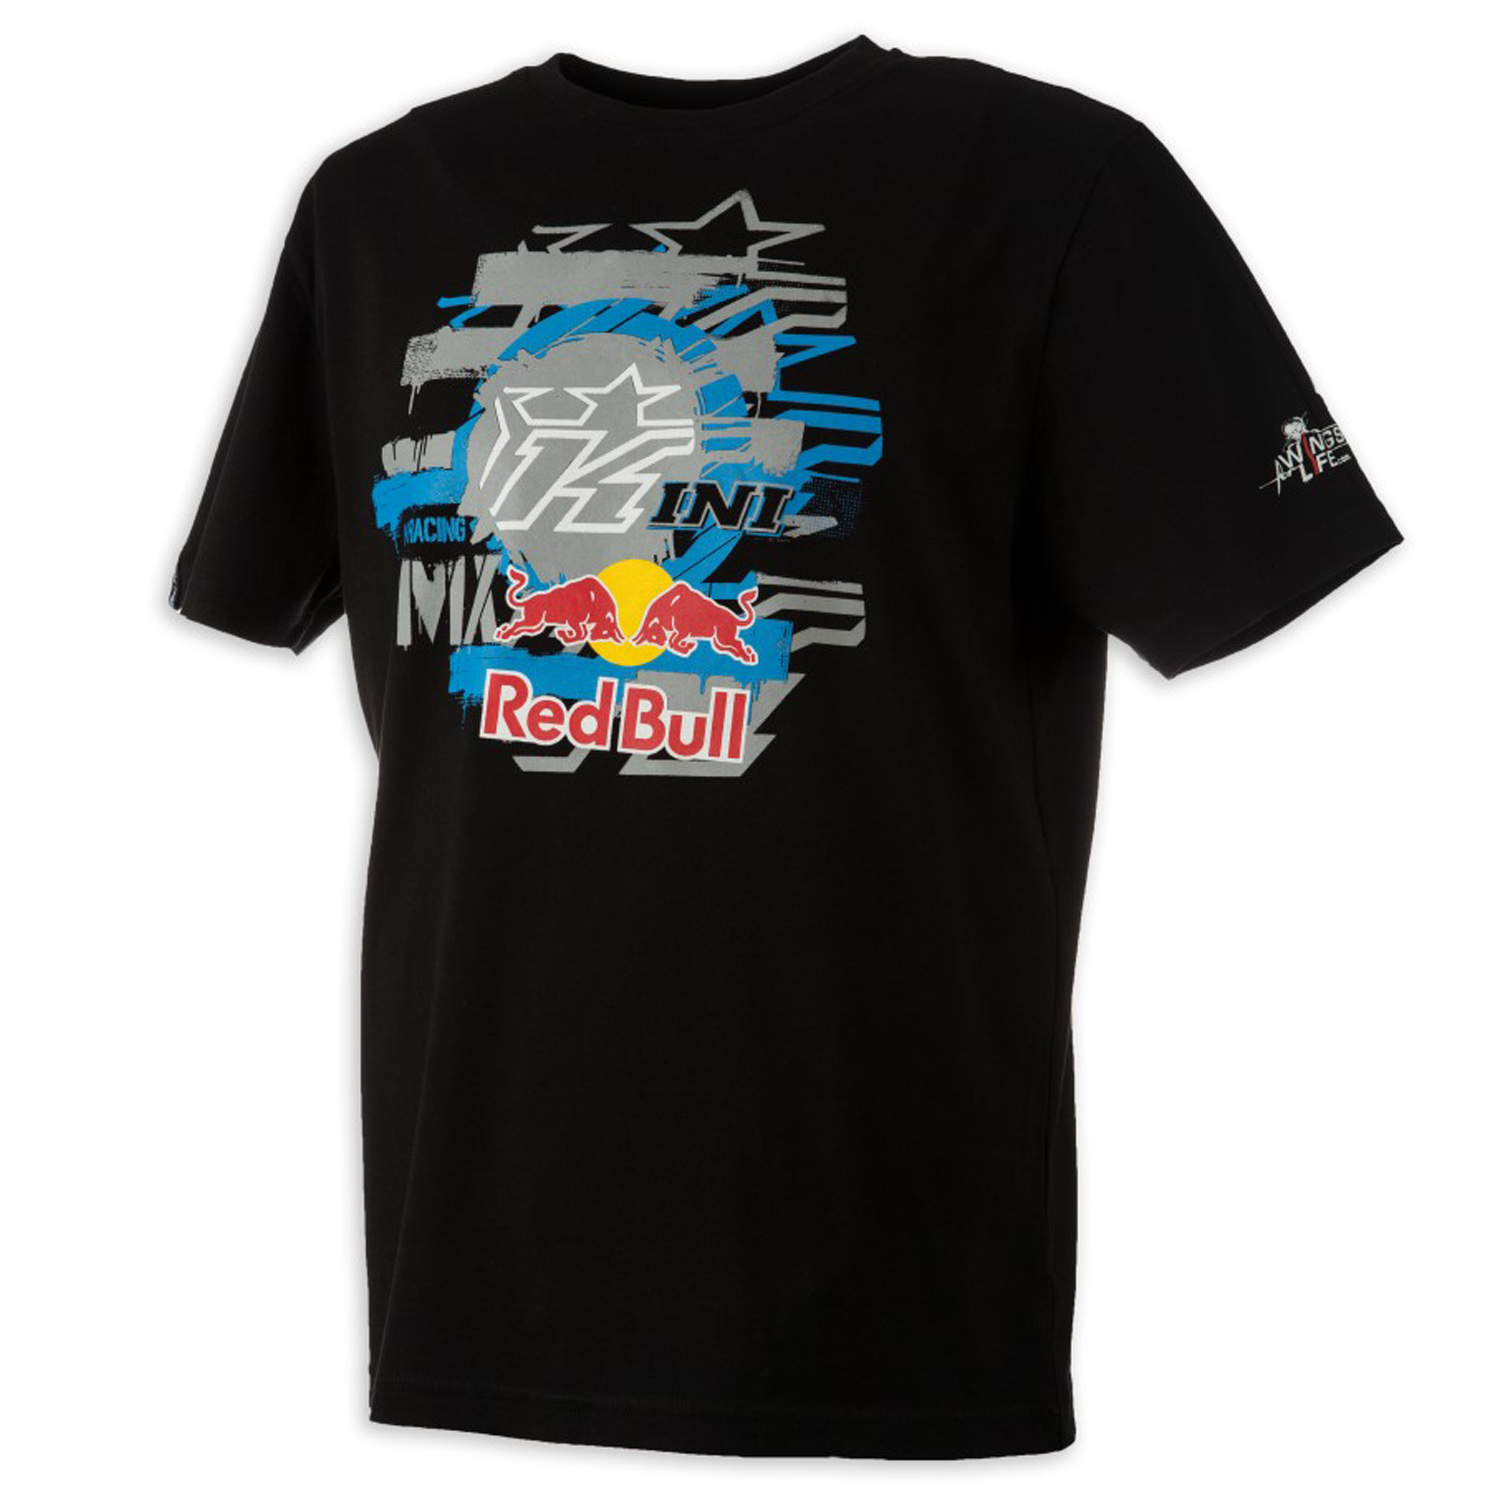 Kini Red Bull T-Shirt Layered Nero